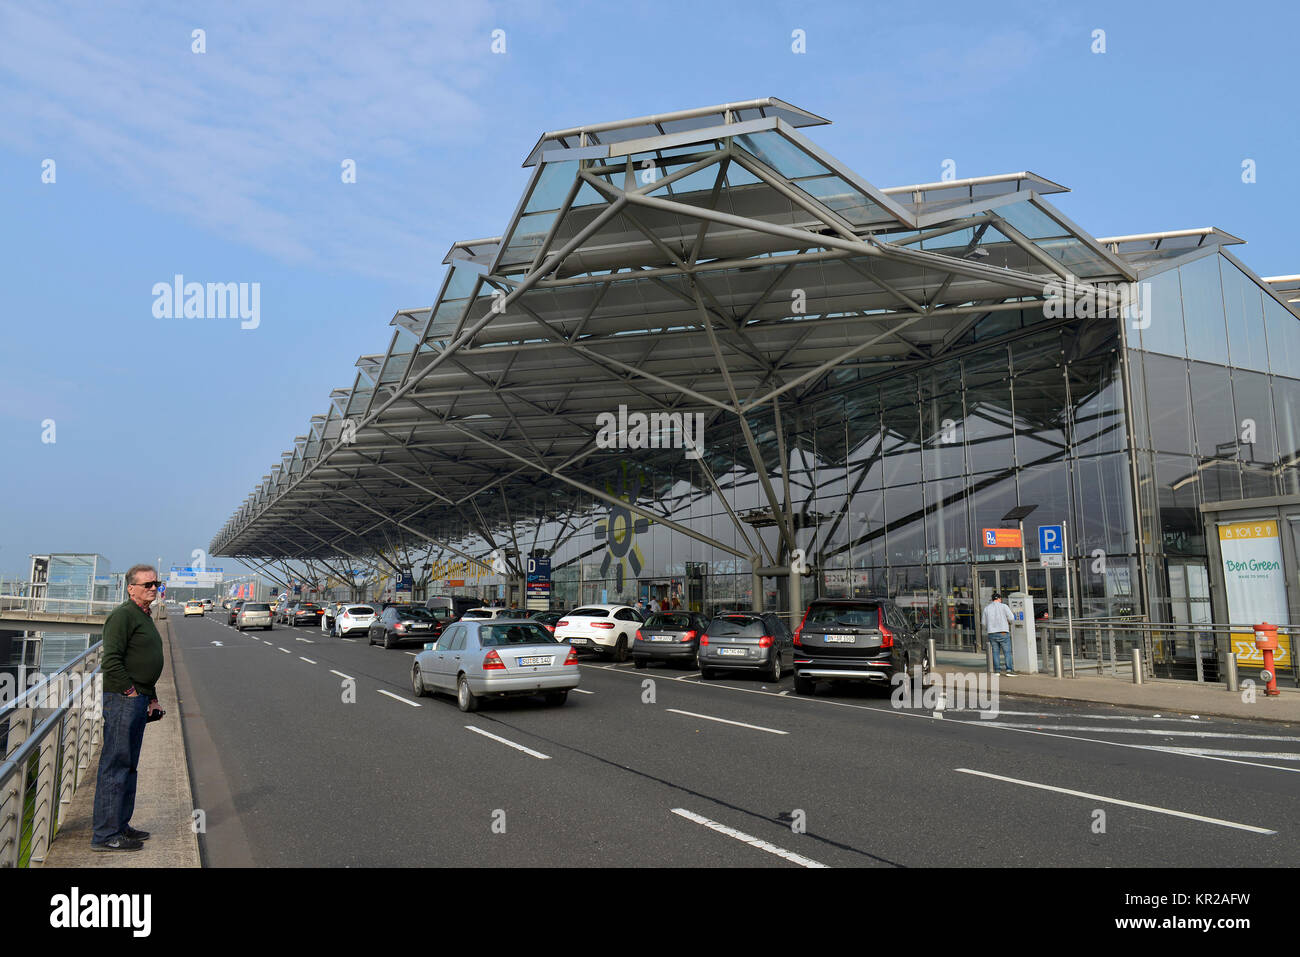 La borne d'aéroport de Cologne / Bonn, Rhénanie du Nord-Westphalie, Allemagne, Flughafen Köln / Bonn, Nordrhein-Westfalen, Deutschland Banque D'Images